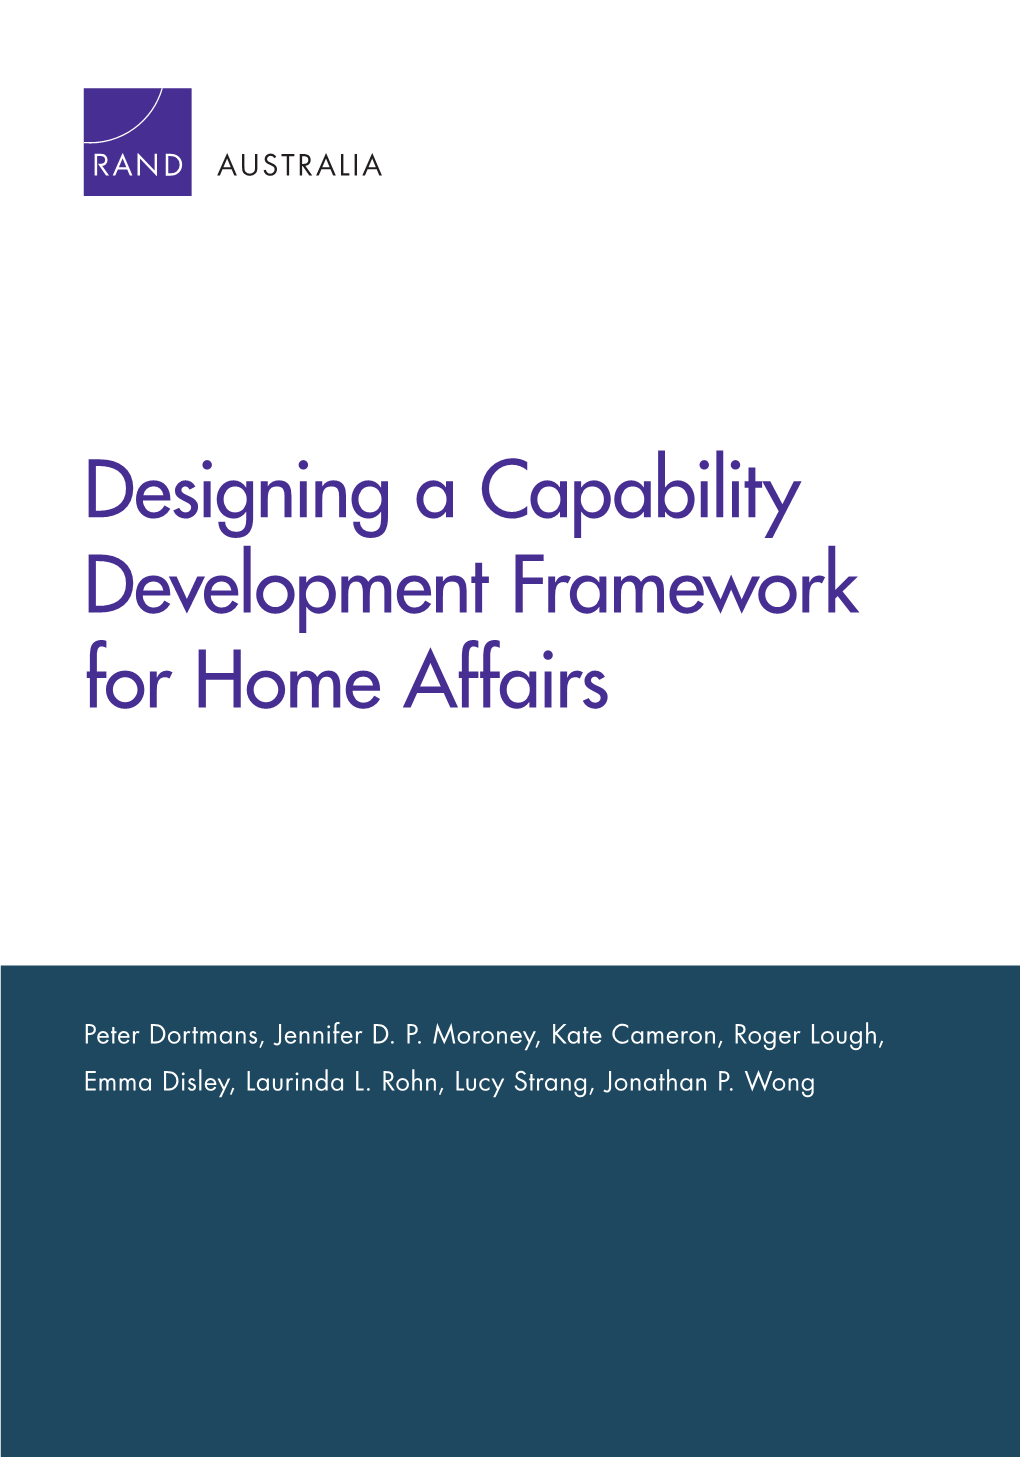 Designing a Capability Development Framework for Home Affairs